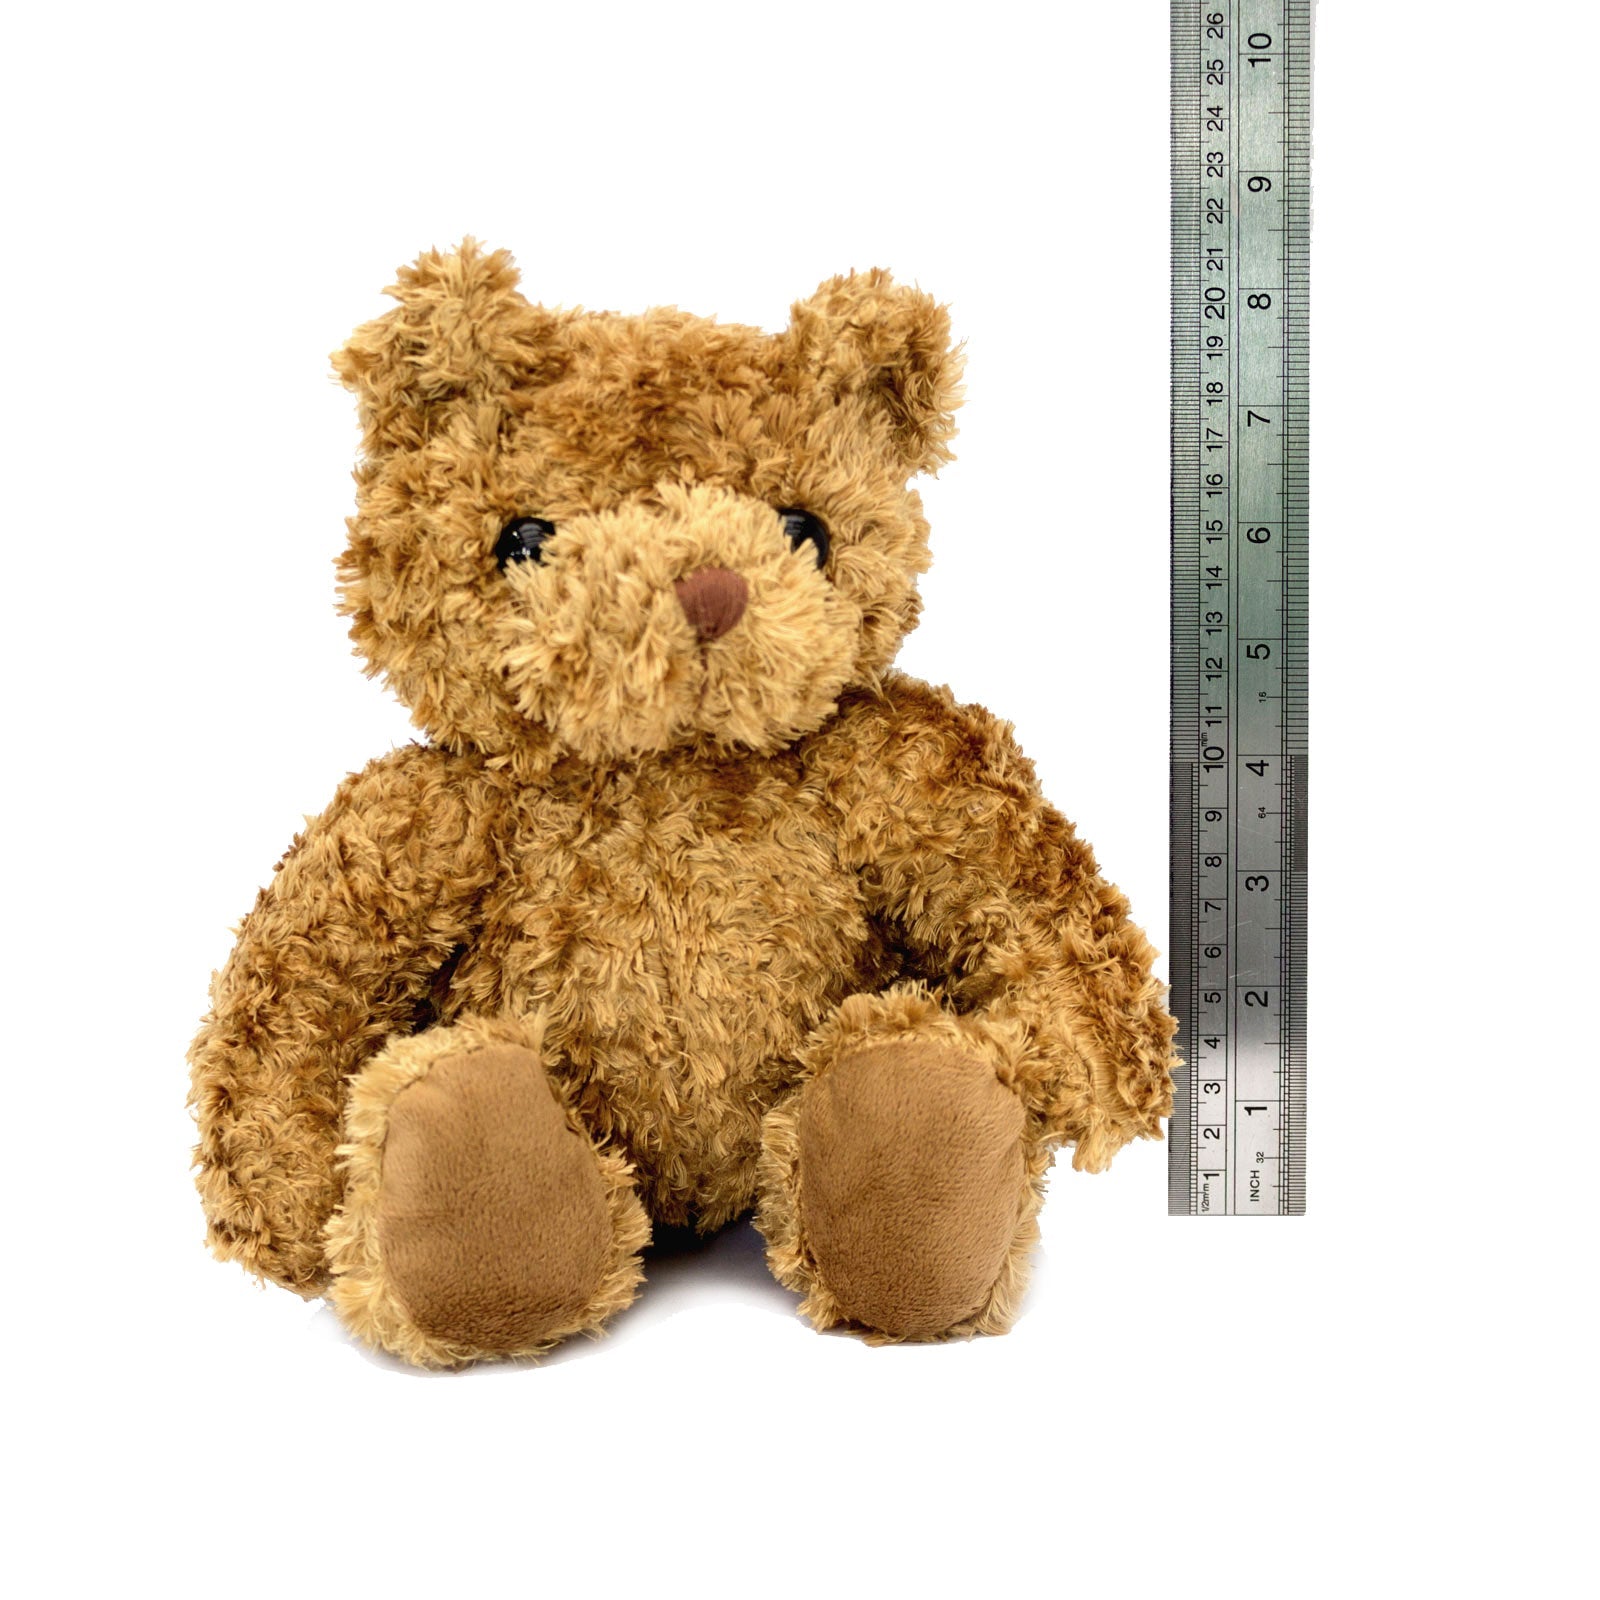 I Love Cuddling - Teddy Bear